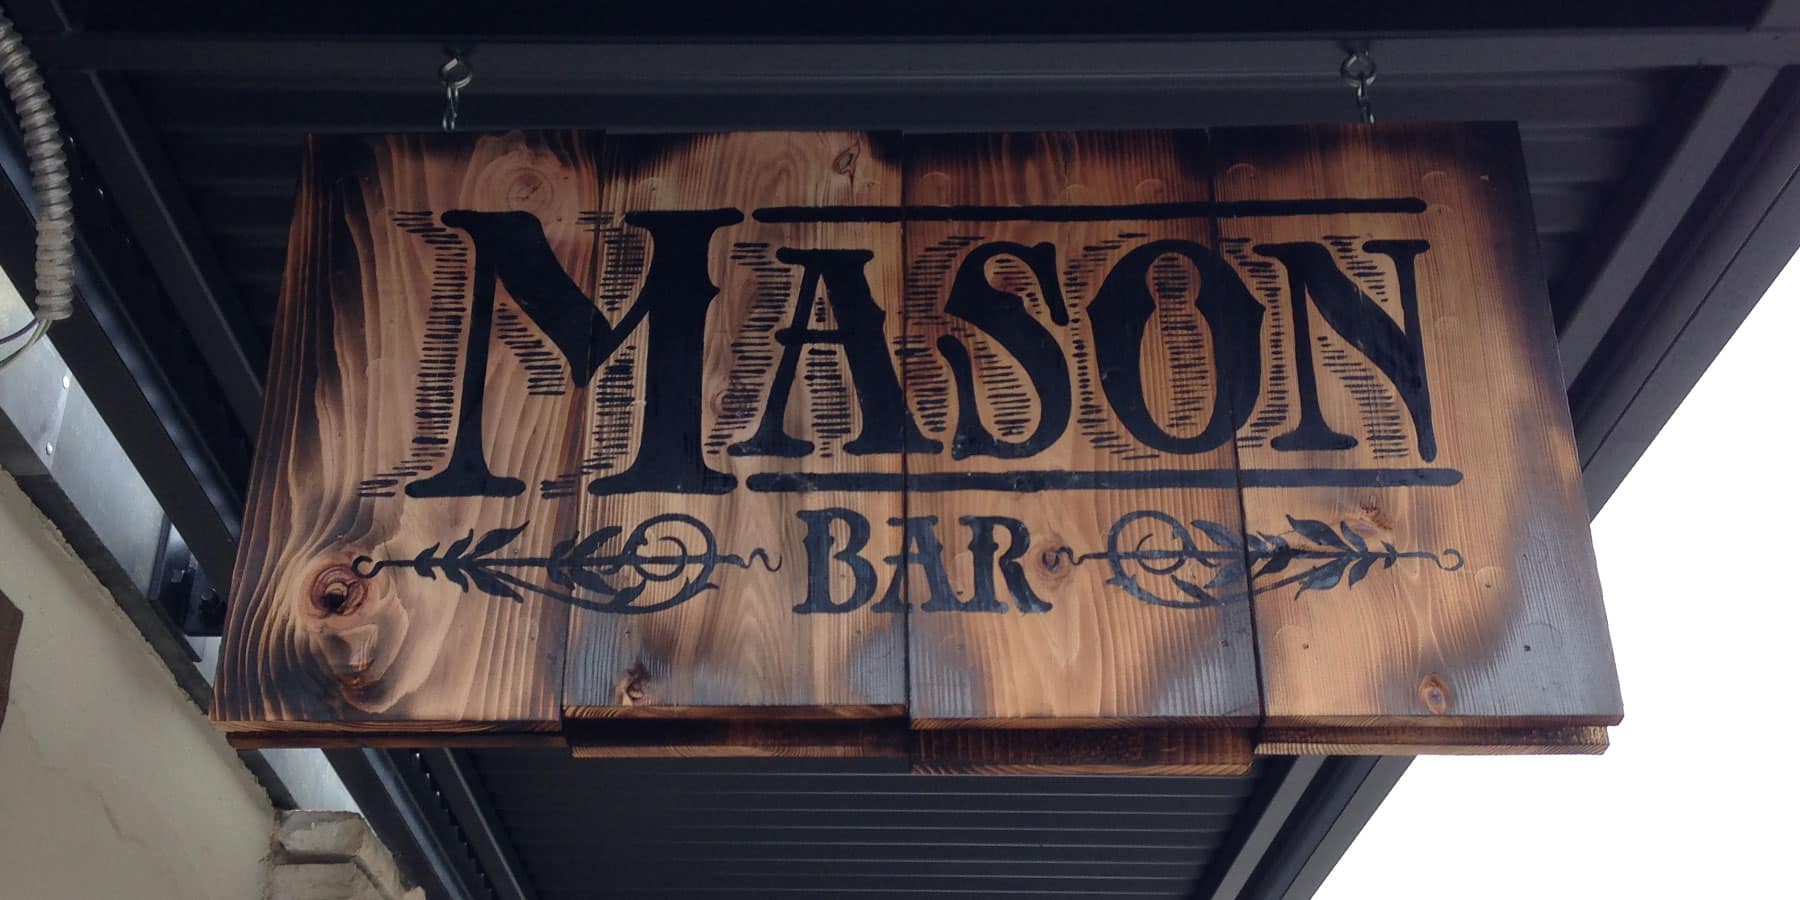 Mason Bar